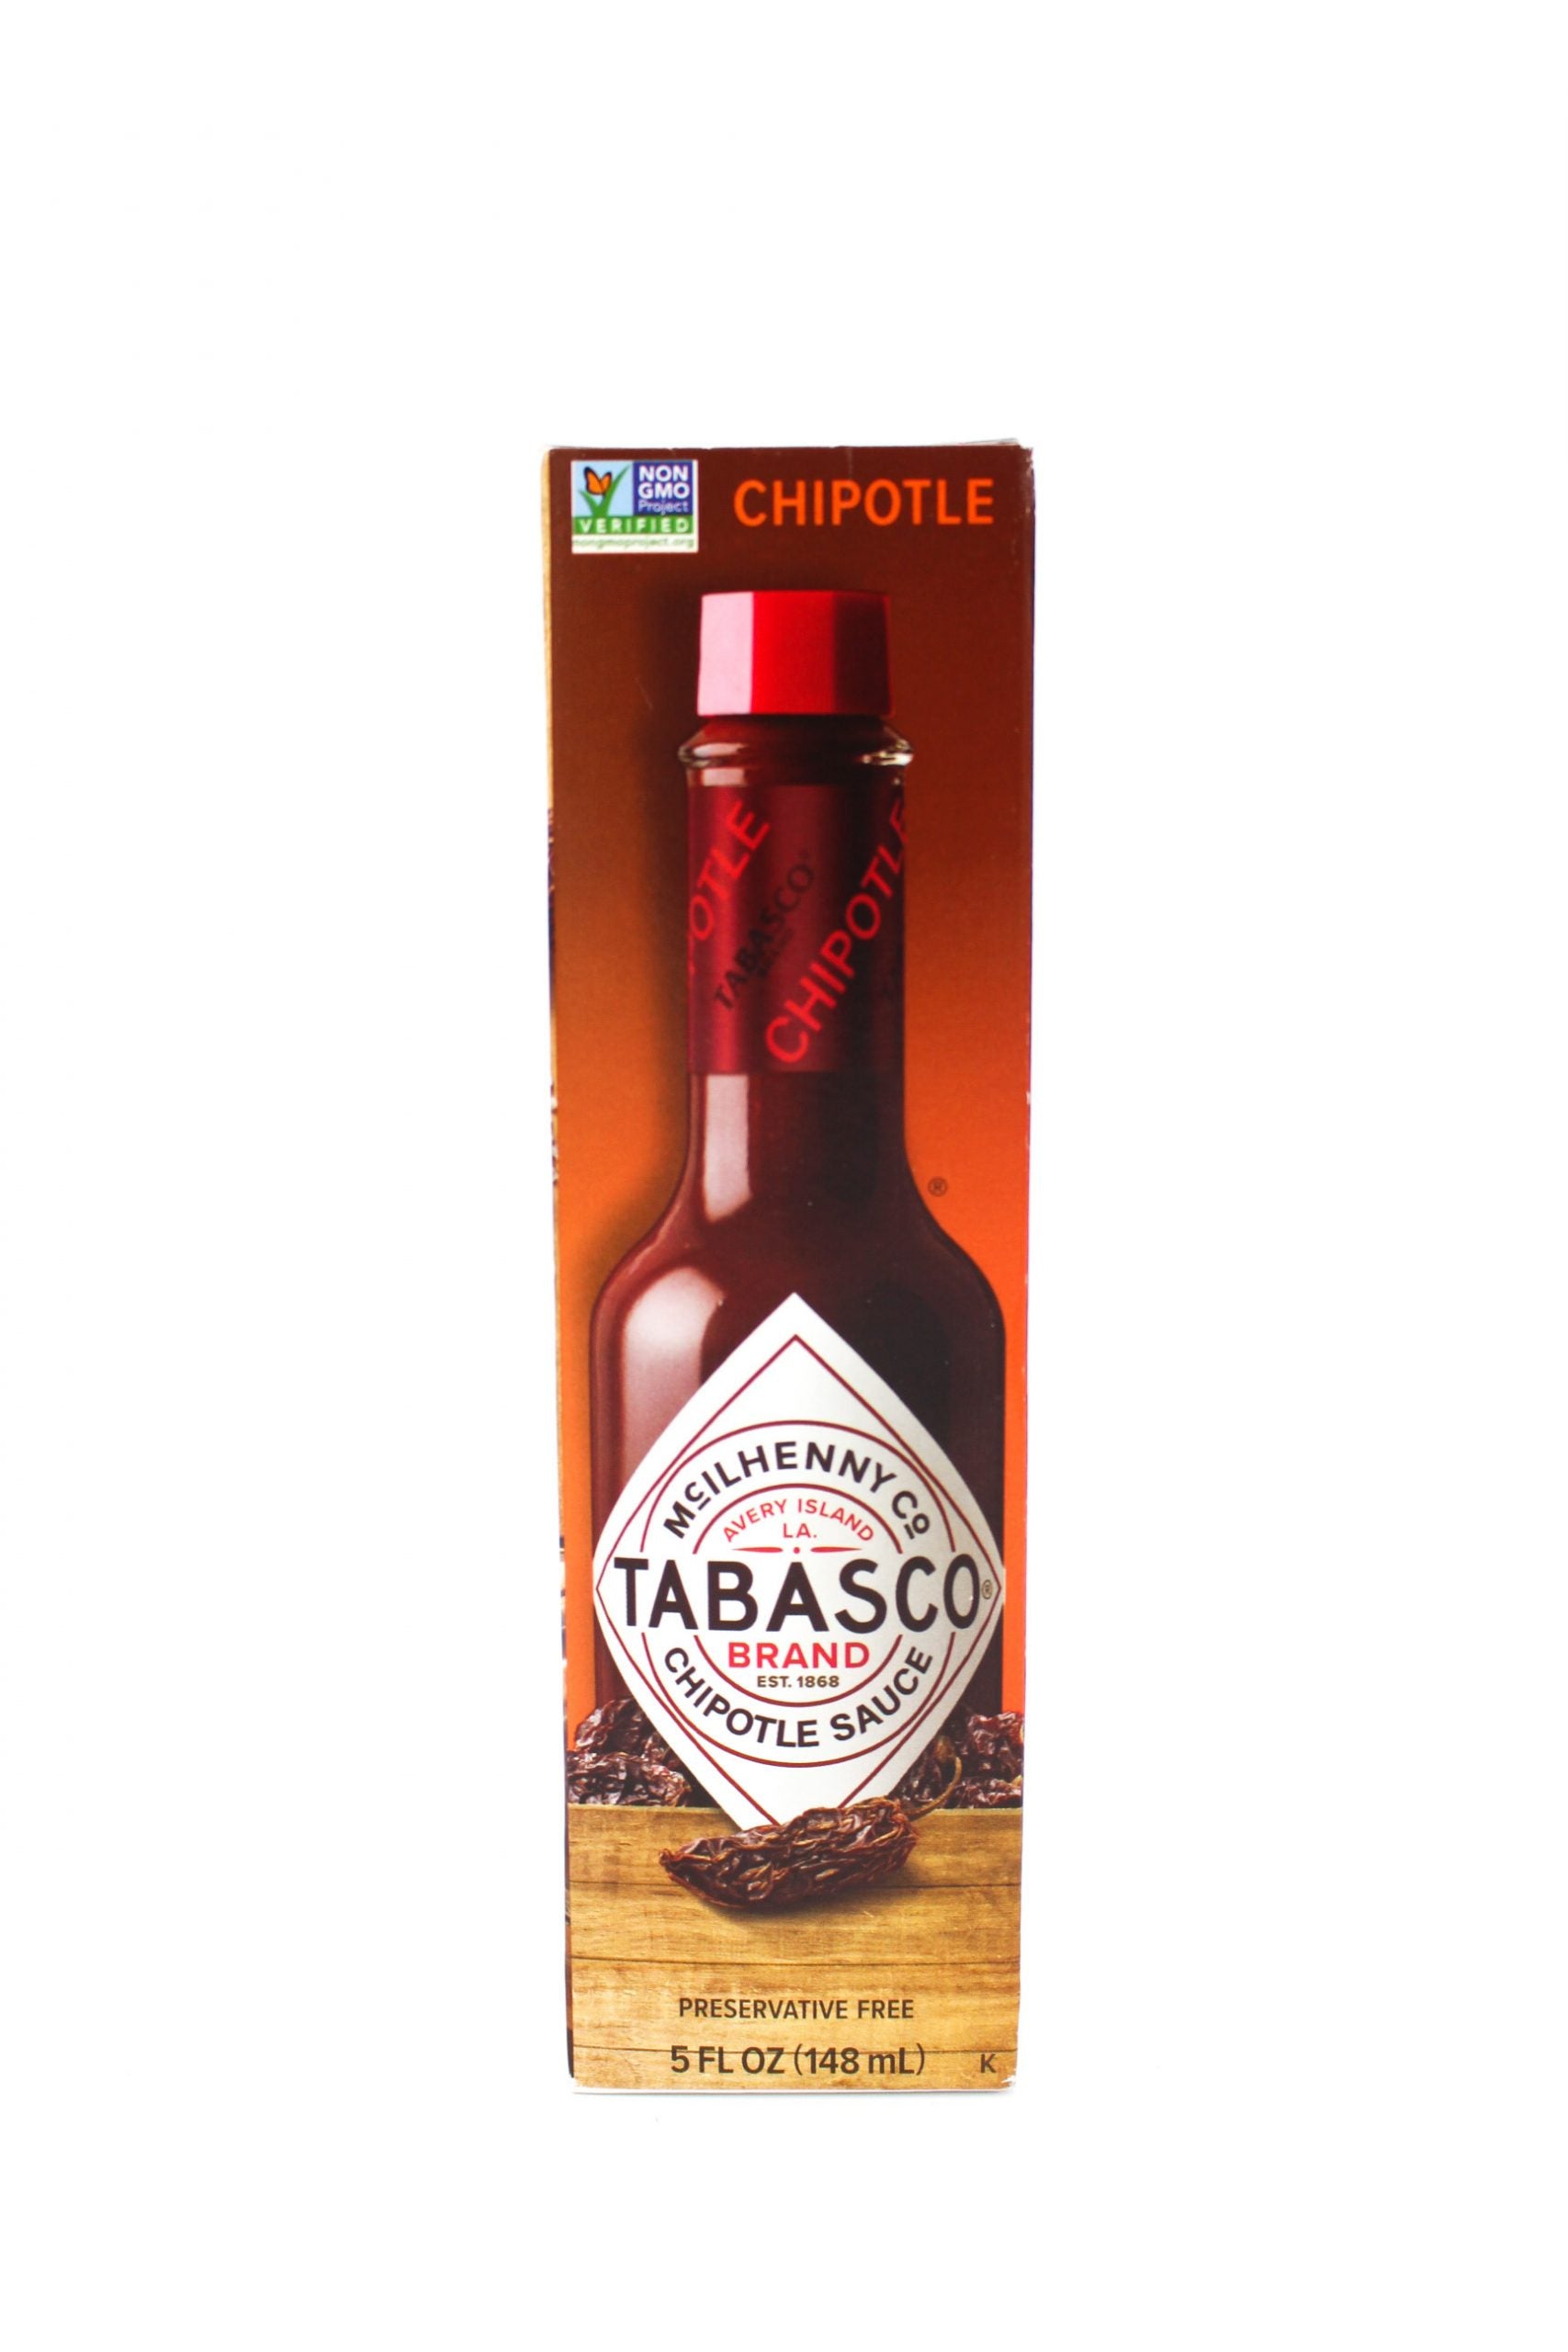 Tabasco 2 Pack Hot Sauce 5 oz Bottle Bundled by Louisiana Pantry (Habanero  Pepper)